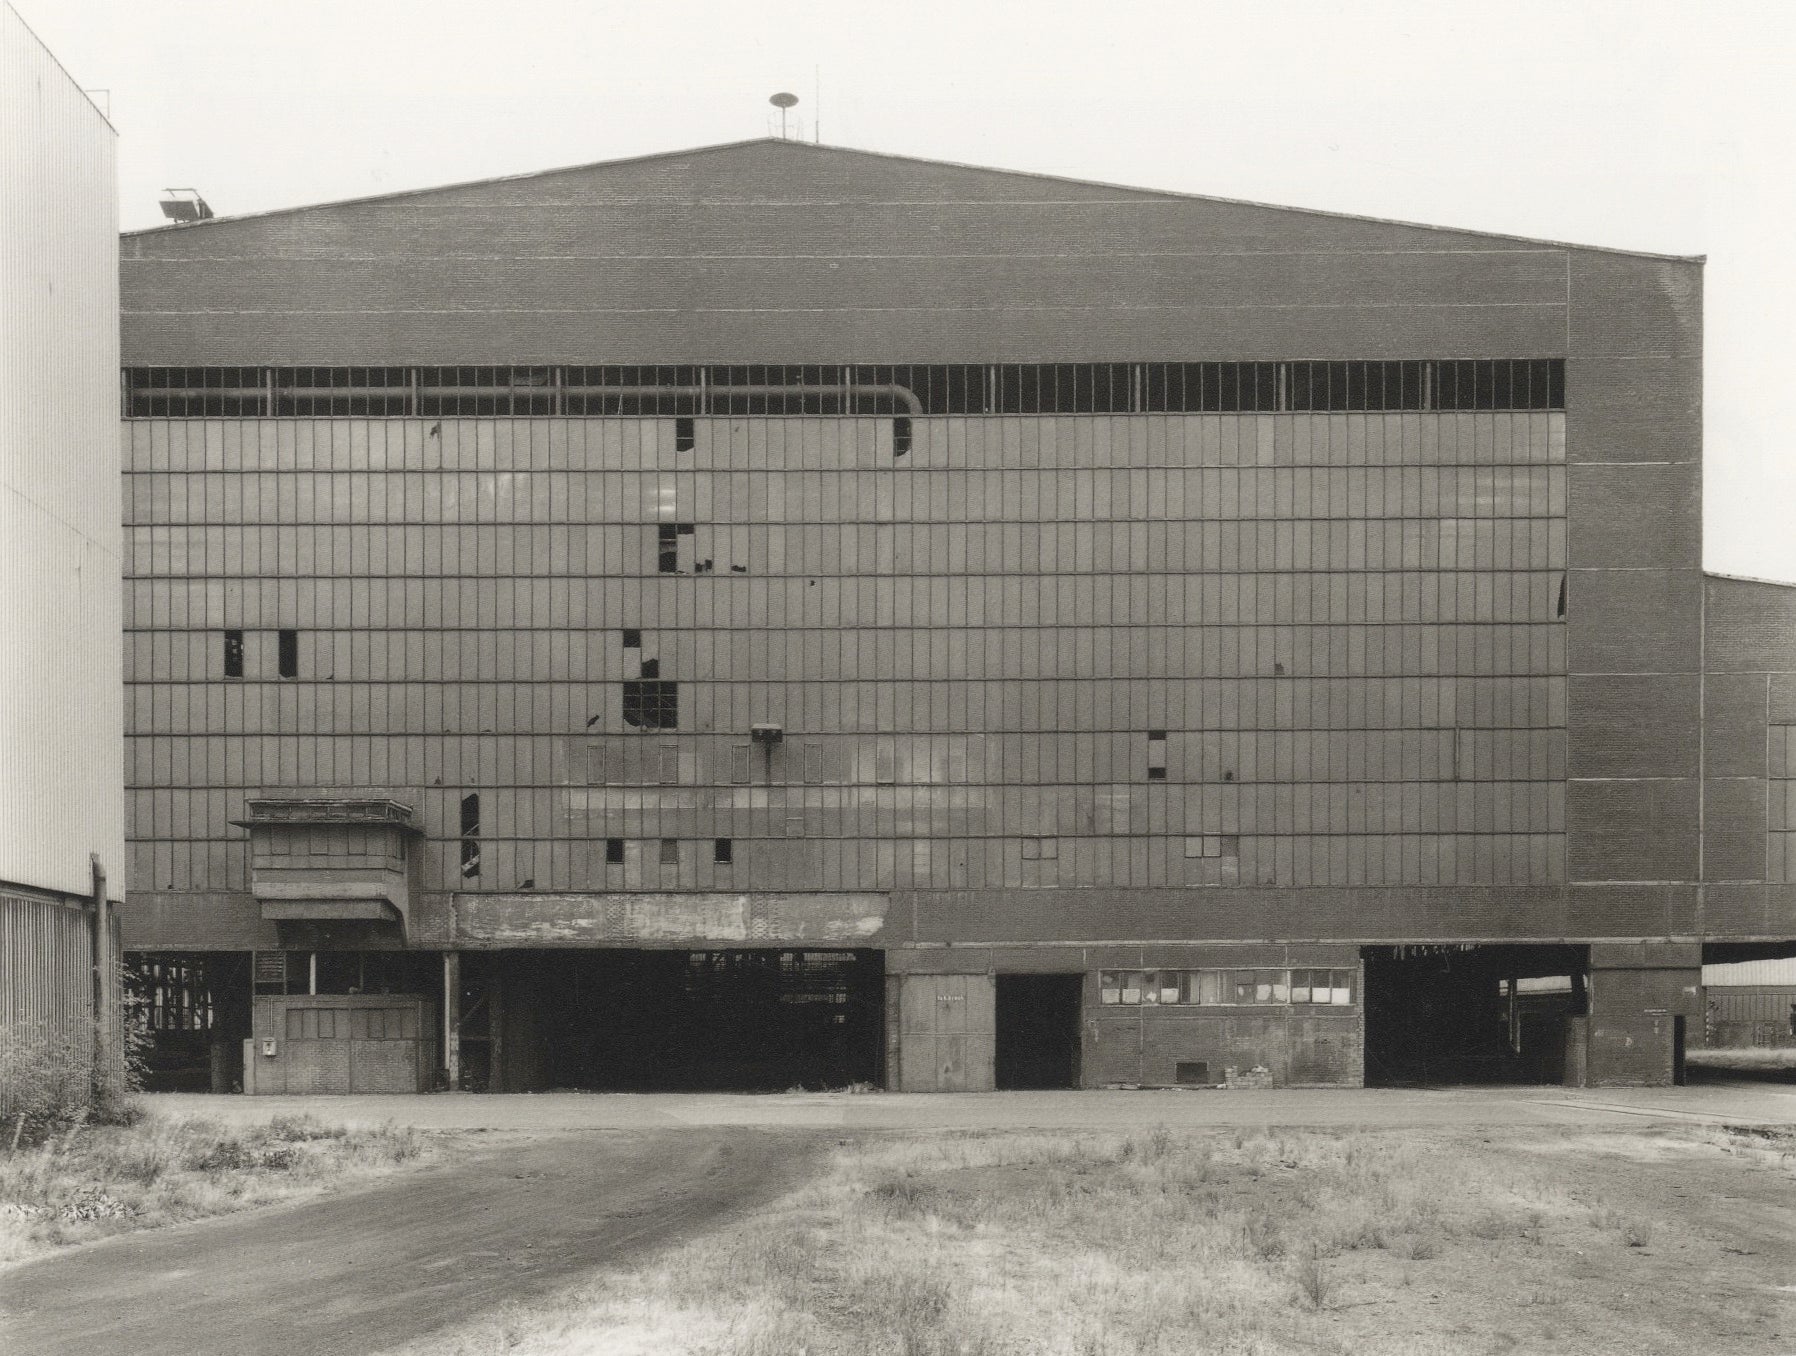 Bernd und Hilla Becher: Fabrikhallen (Factory Buildings/Industrial Facades, Softcover)